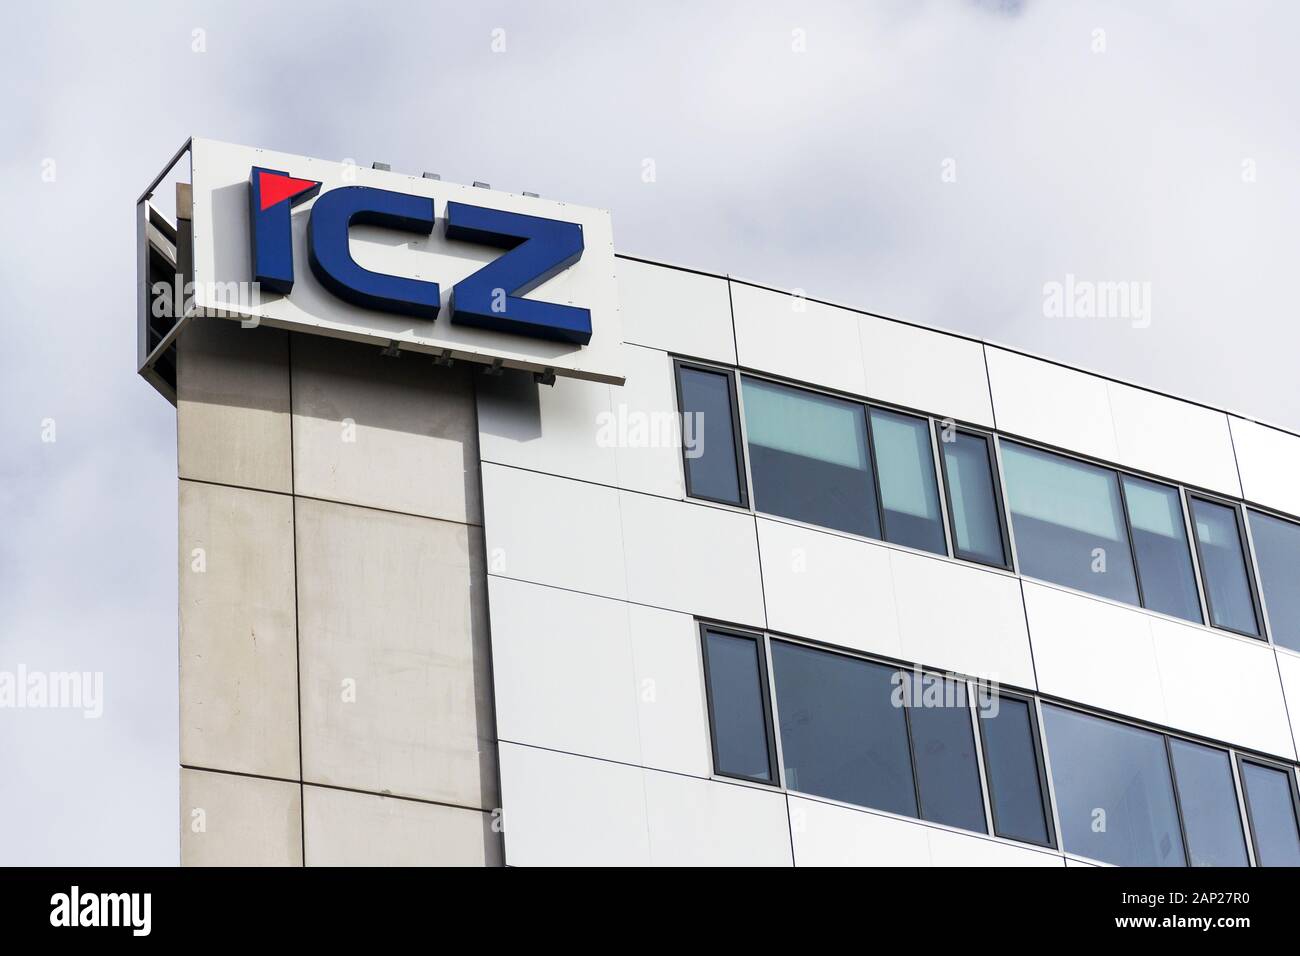 Prag, tschechische Republik - 12. FEBRUAR 2018: ICZ Gruppe IT-Dienstleister Firmenlogo auf Hauptquartier am Februar 12, 2018 in Prag, Tschechische Republik. Stockfoto